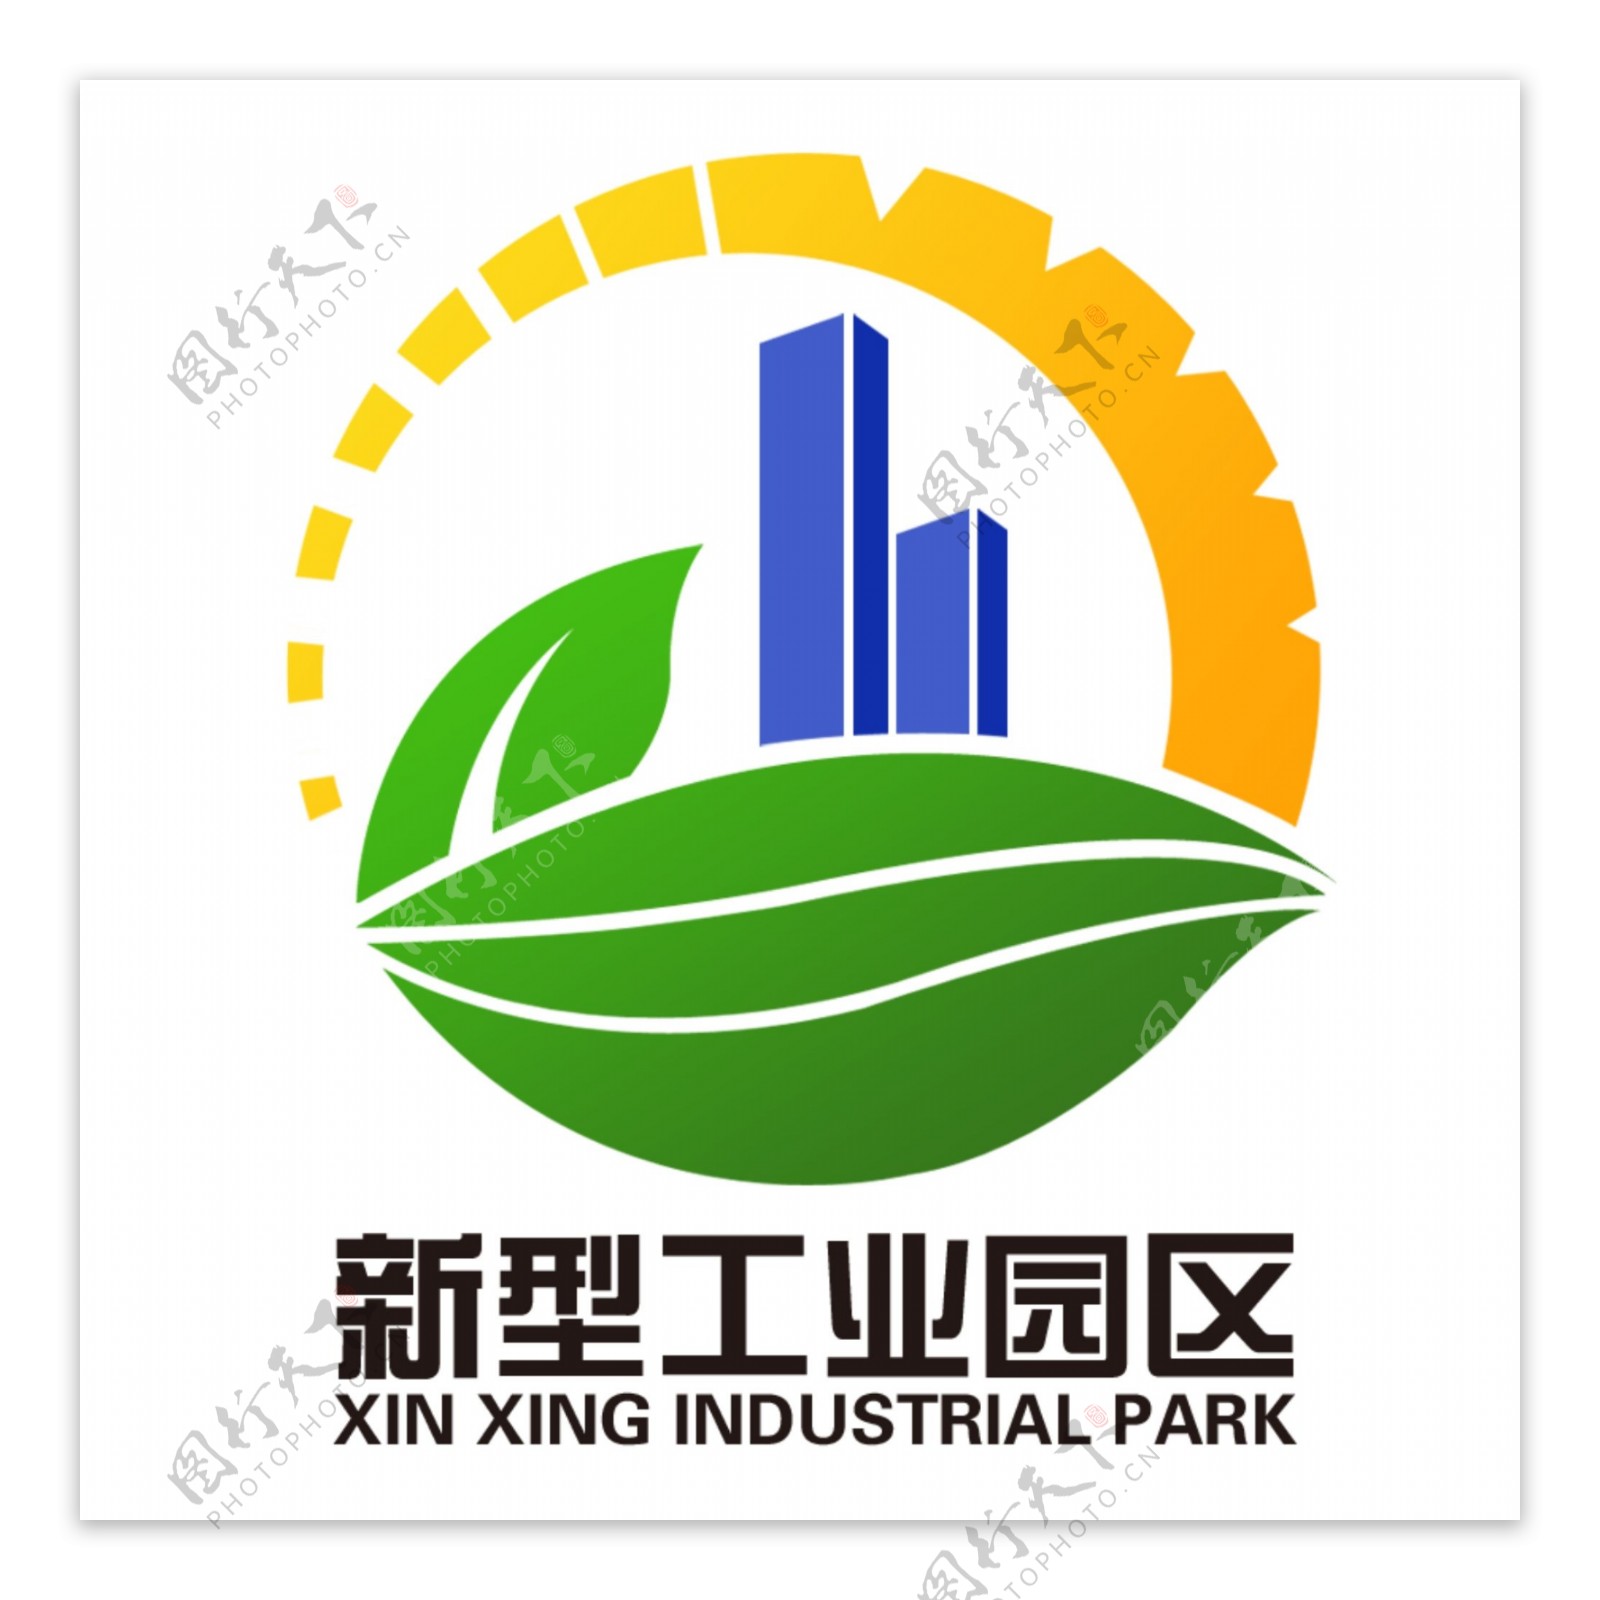 工业园logo